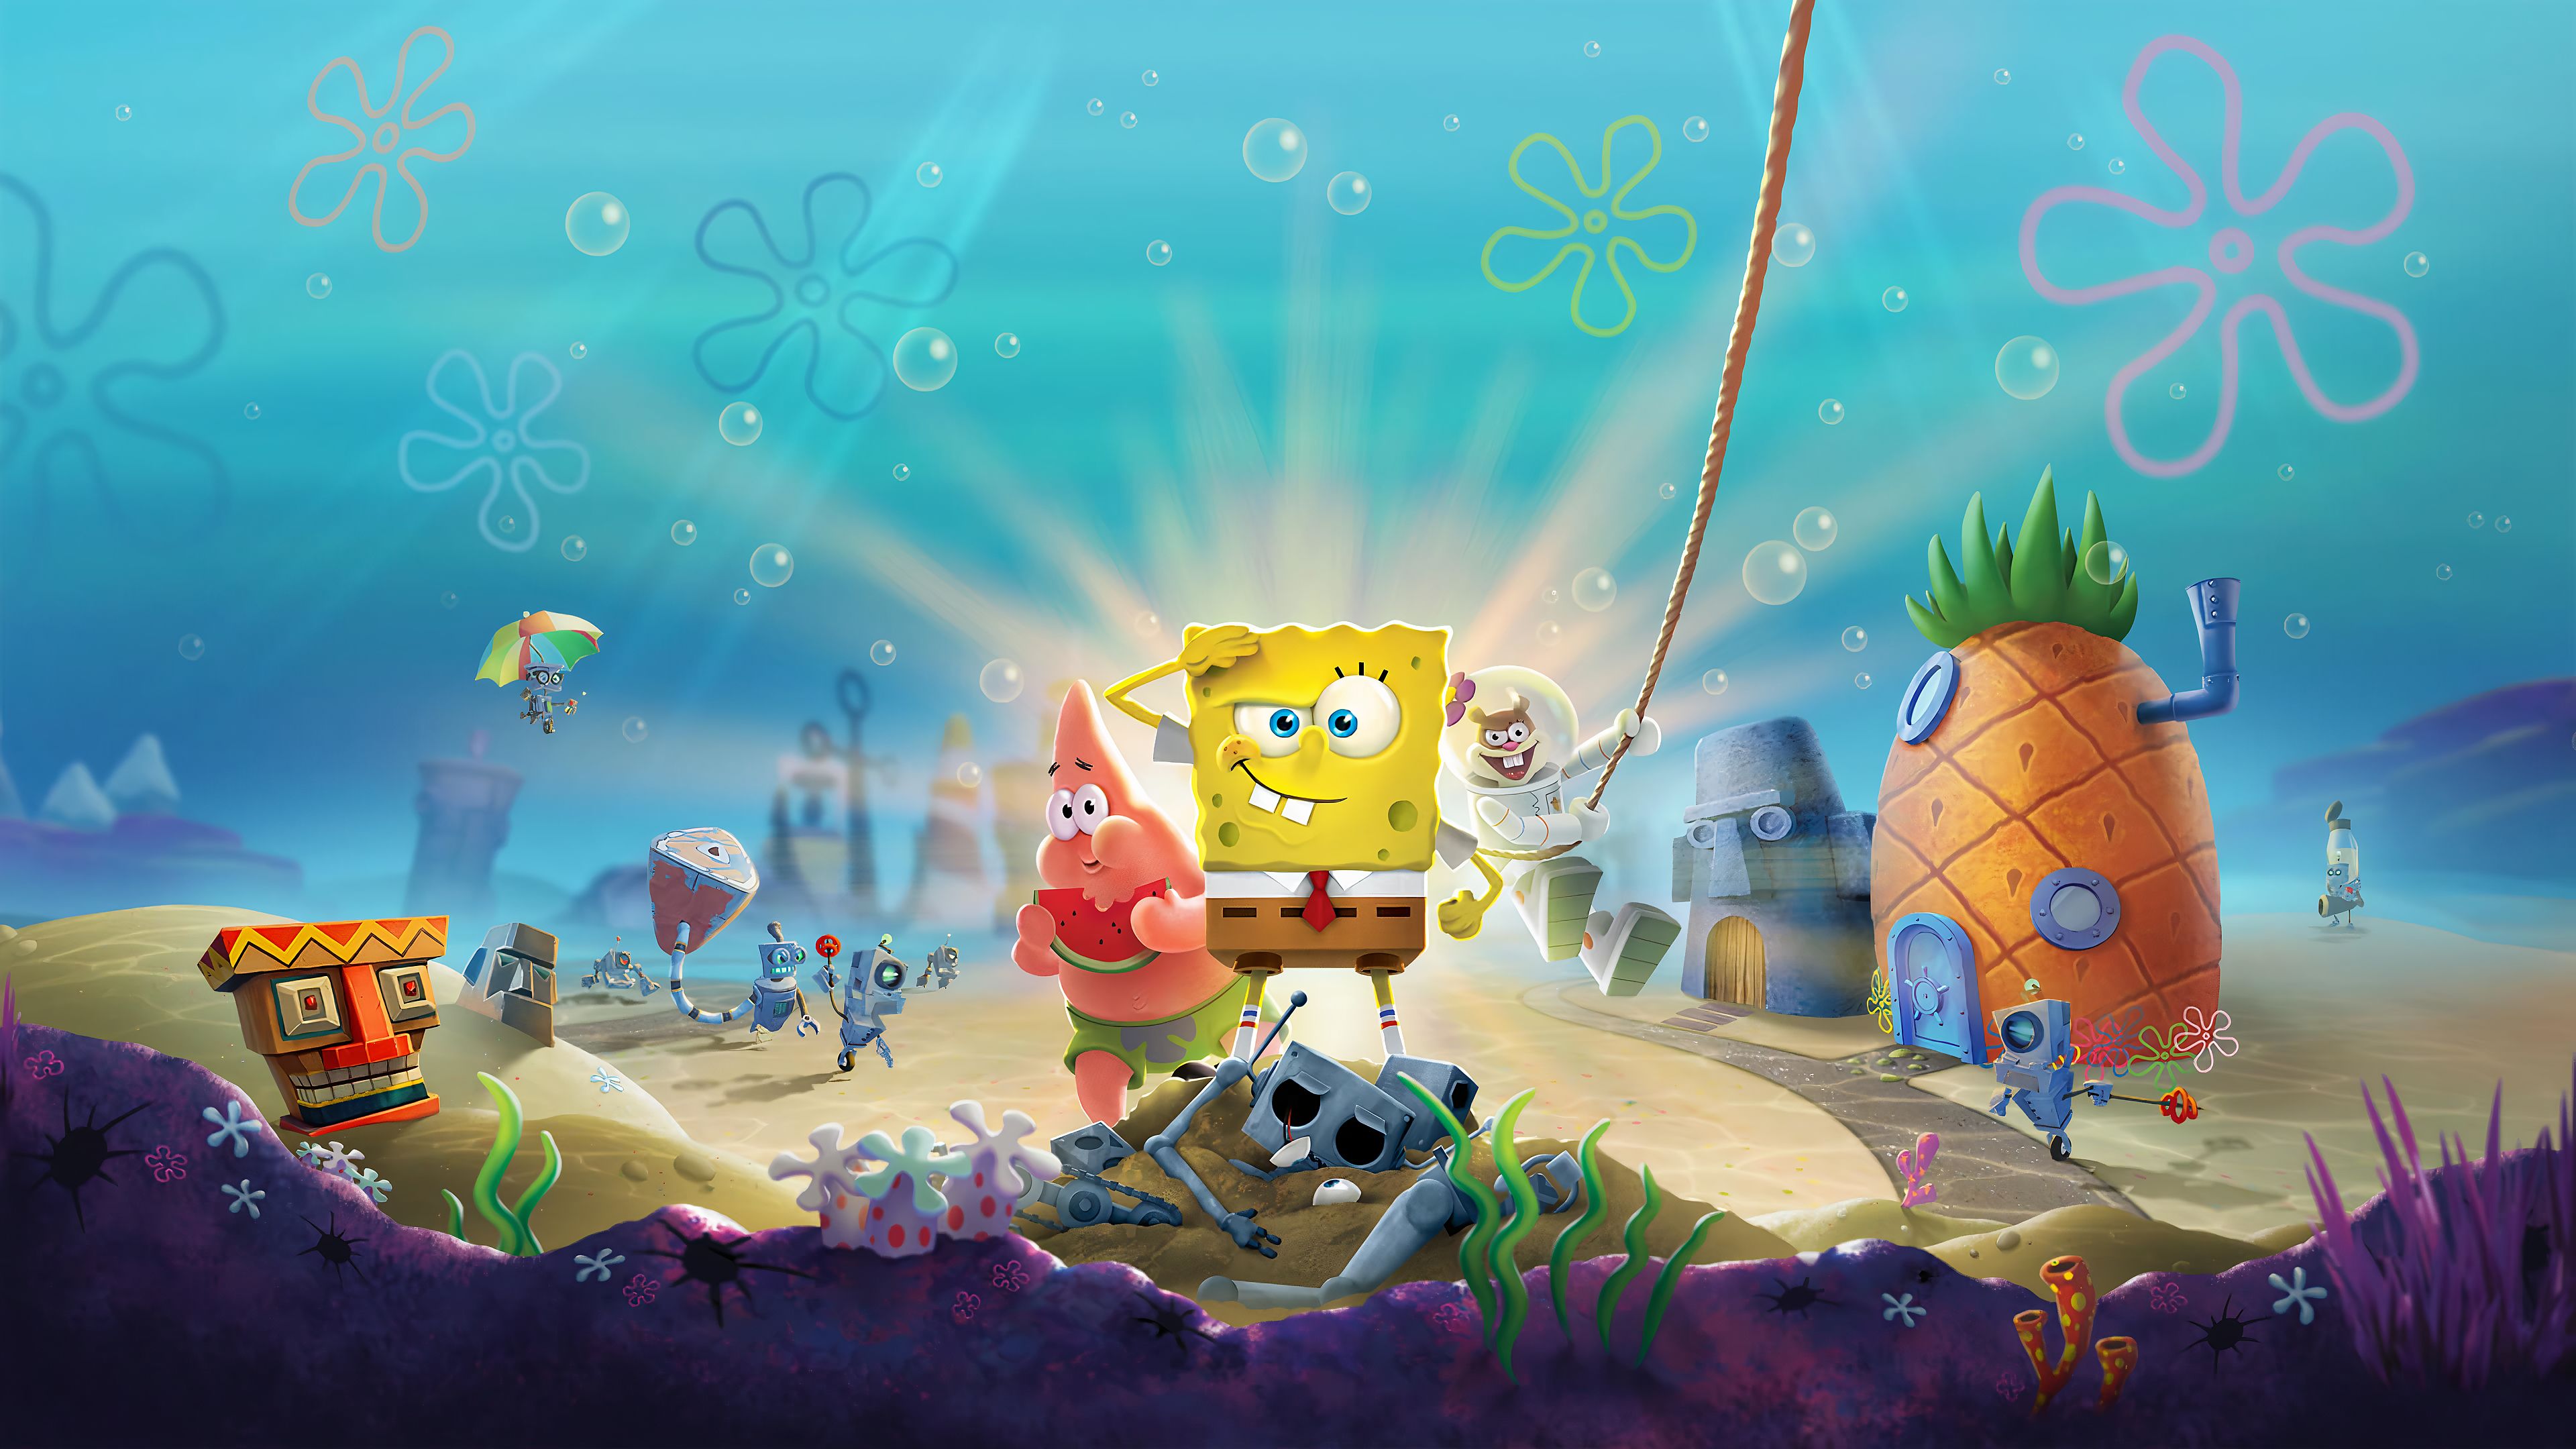 984516画像をダウンロードスポンジボブ, spongebob squarepants: ビキニボトムの戦い, テレビゲーム, パトリックスター-壁紙とスクリーンセーバーを無料で